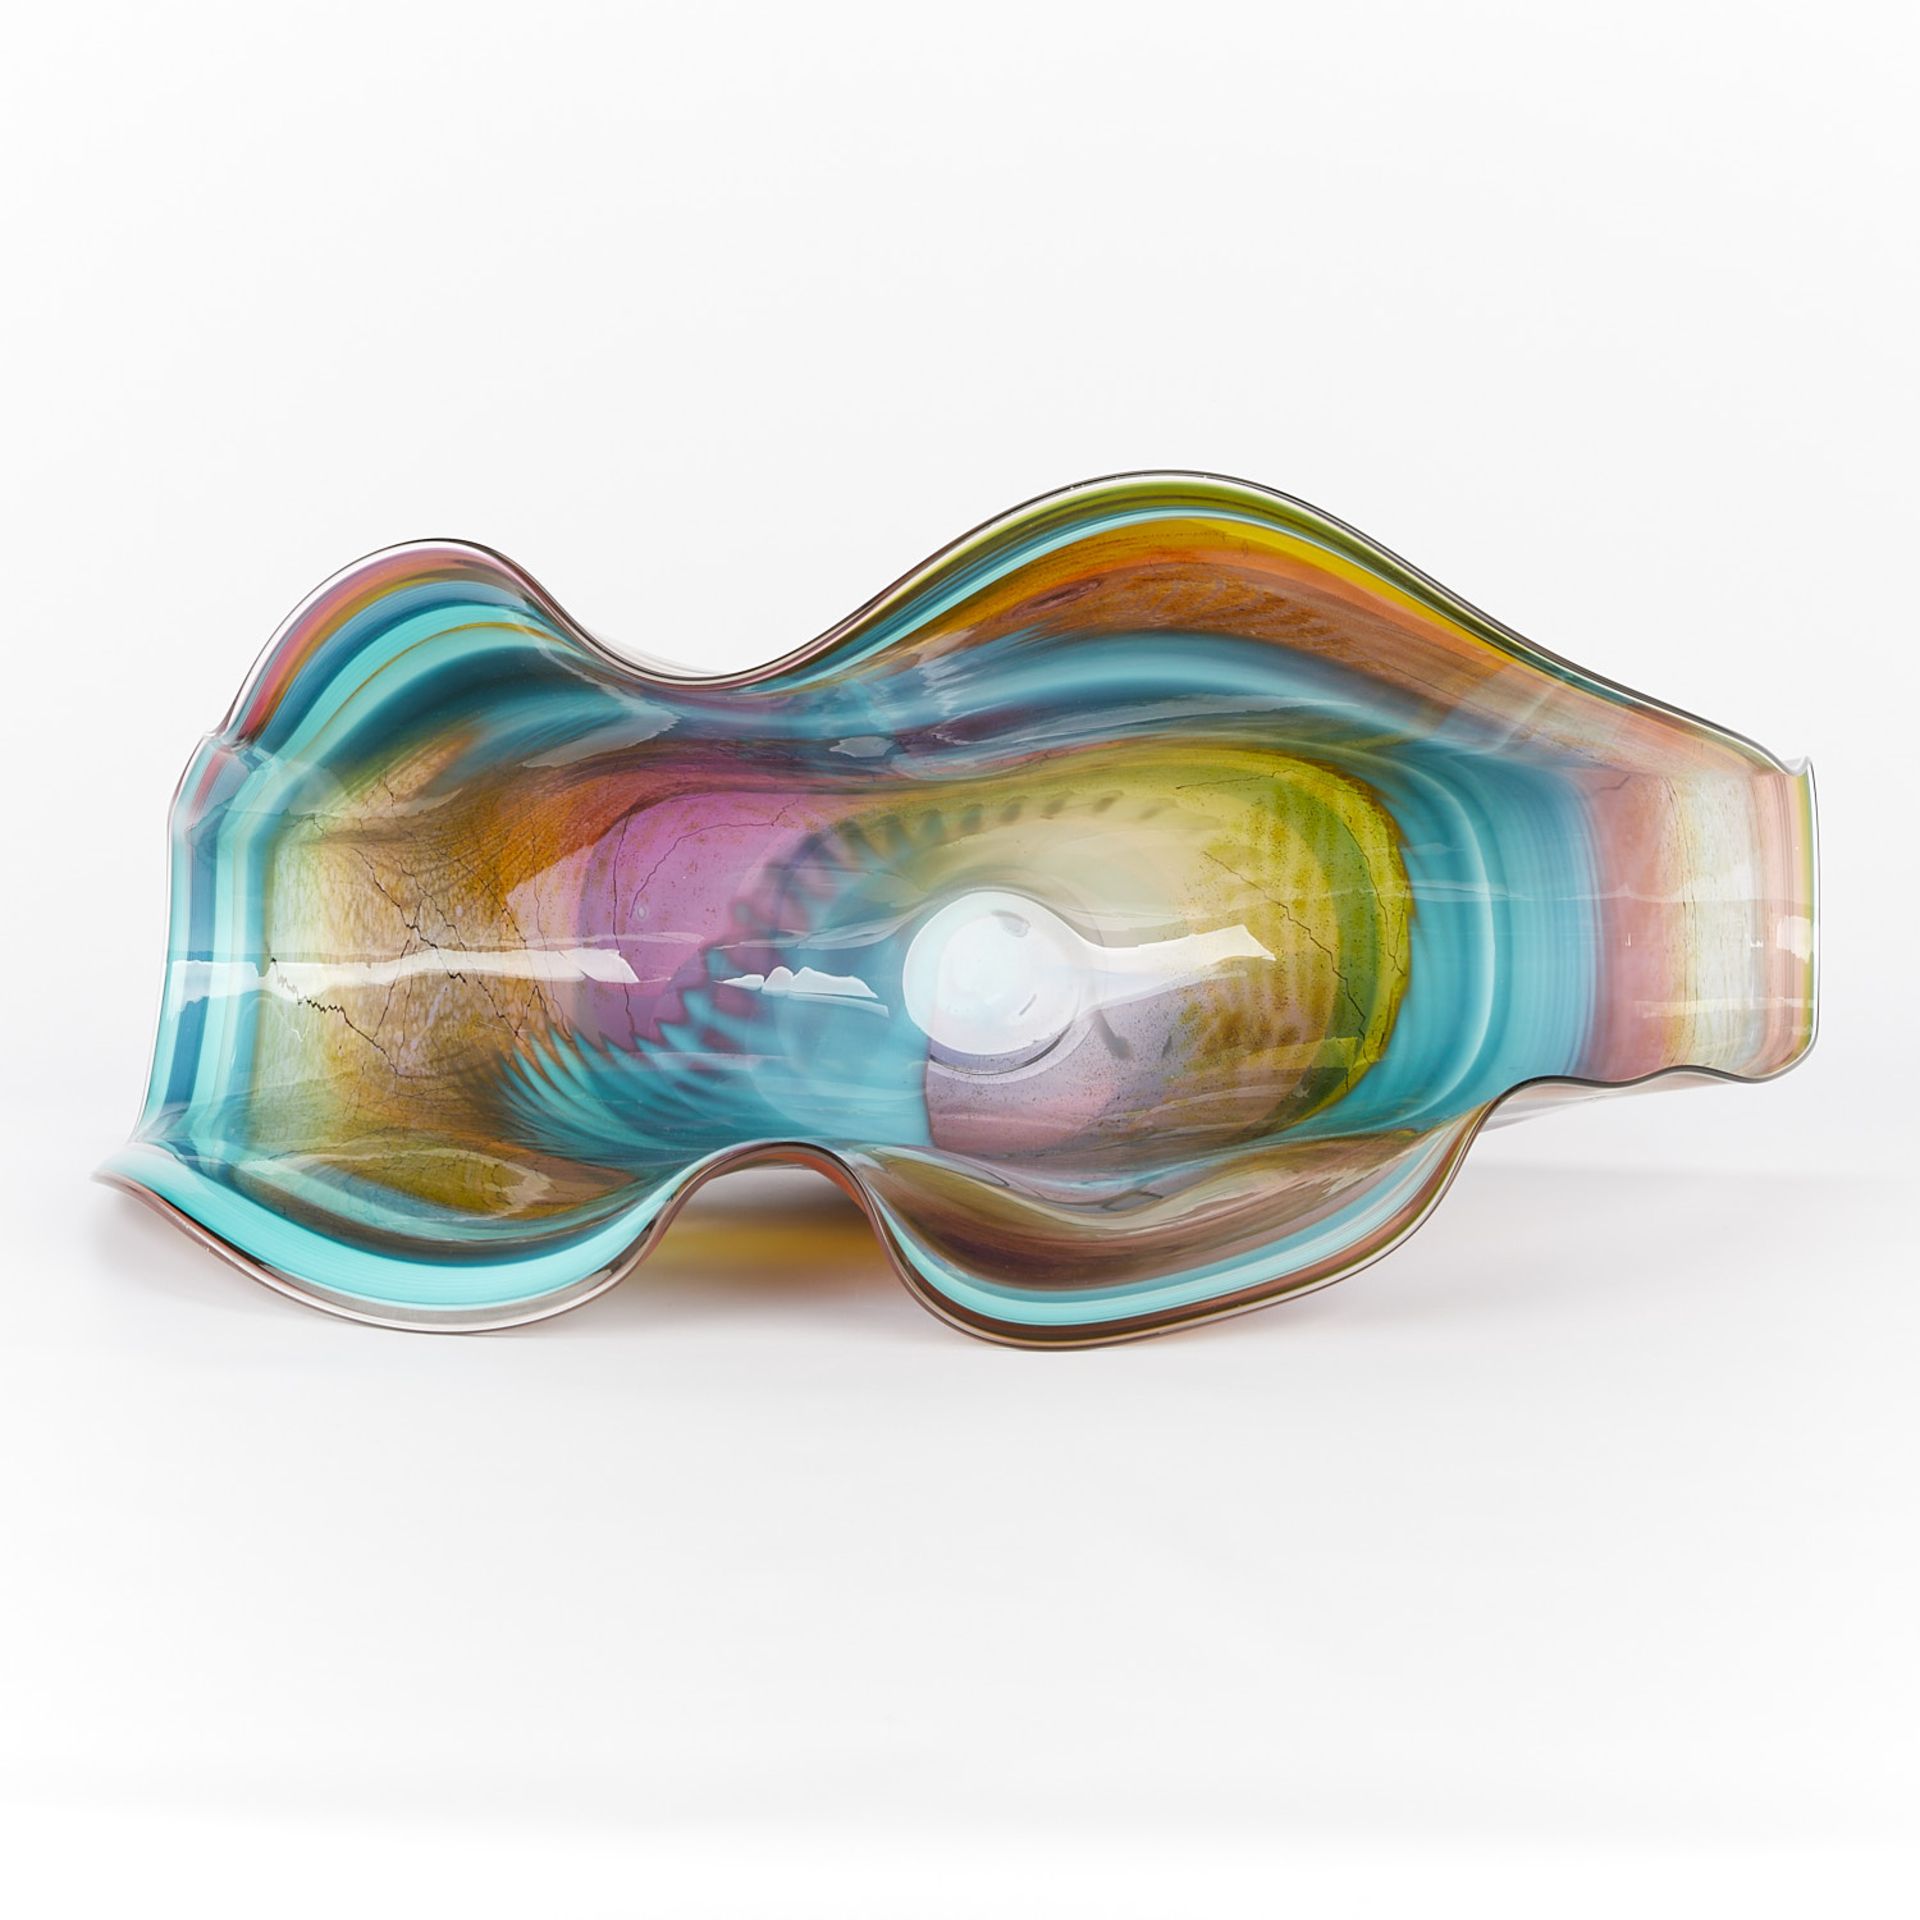 Chris Hawthorne Folded Fan Glass Vessel - Image 7 of 17